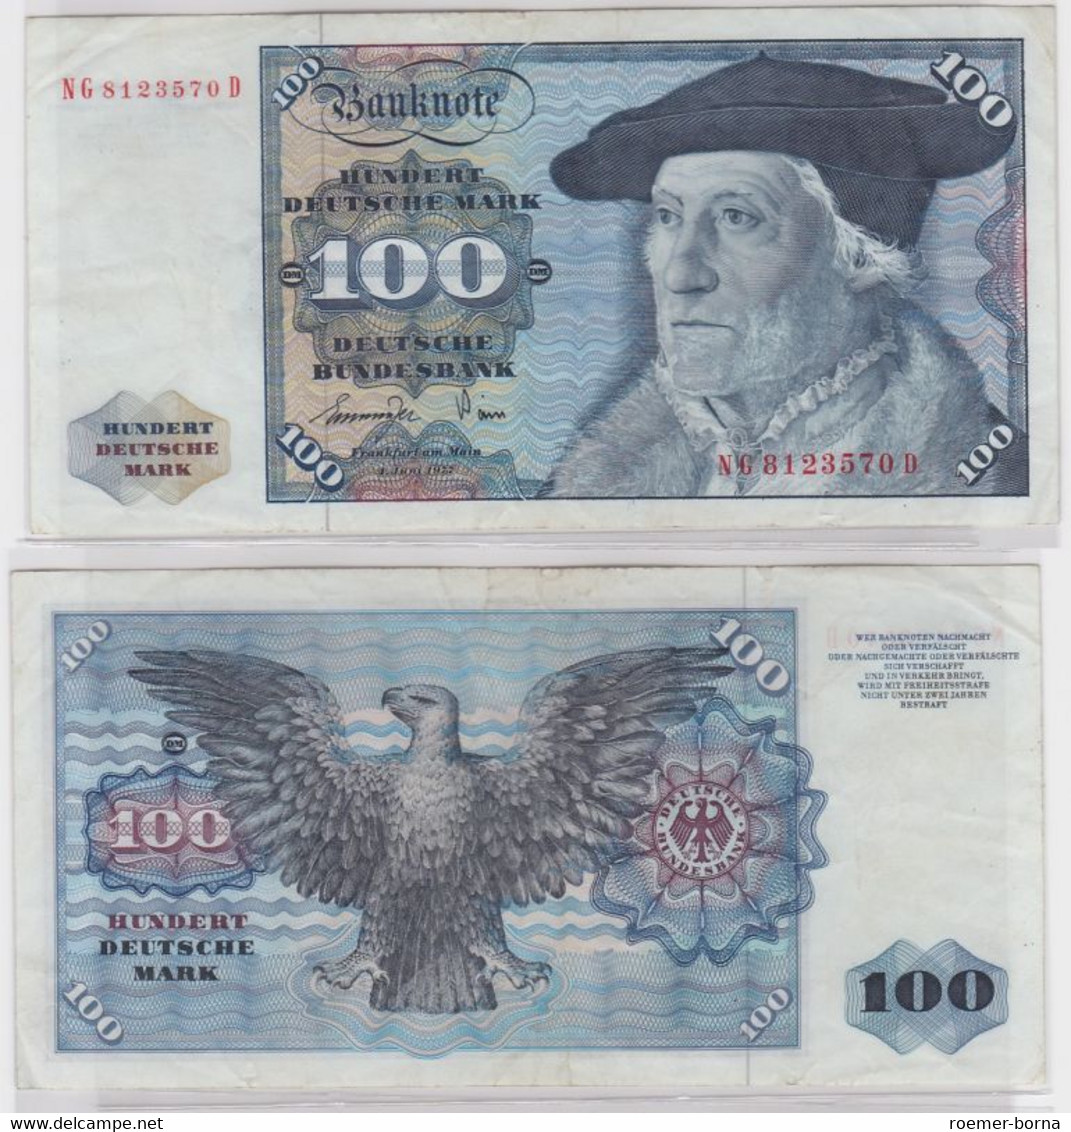 T145439 Banknote 100 DM Deutsche Mark Ro 278a Schein 1.Juni 1977 KN NG 8123570 D - 100 Deutsche Mark